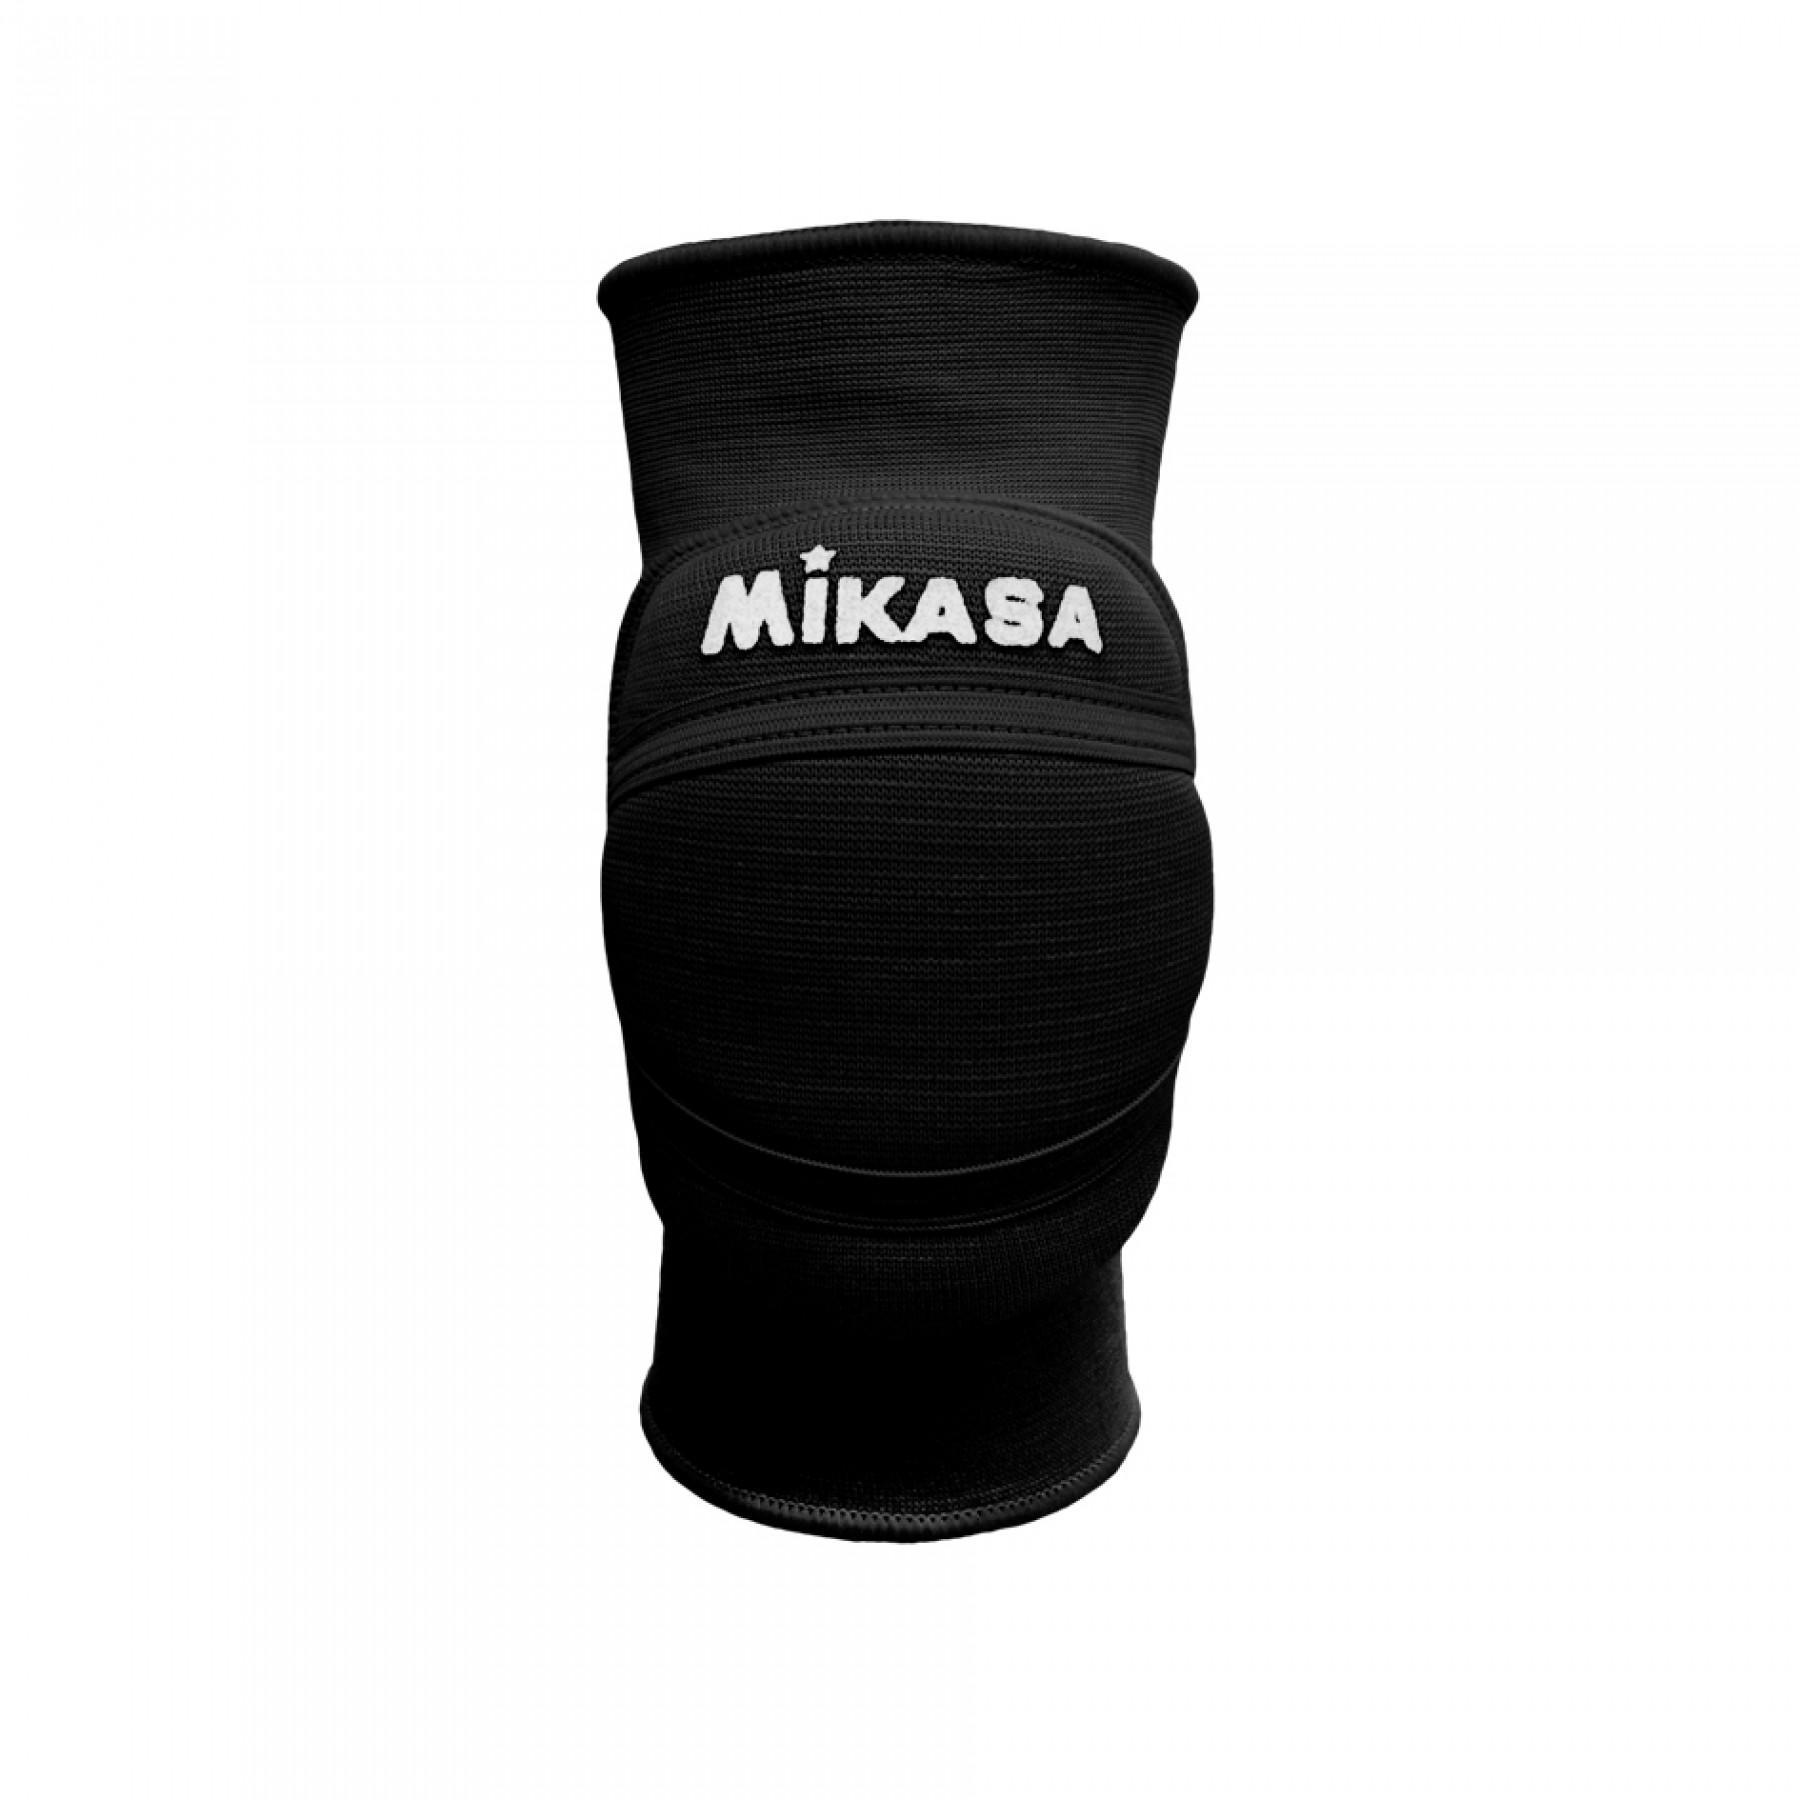 Szkolne ochraniacze na kolana Mikasa MT8